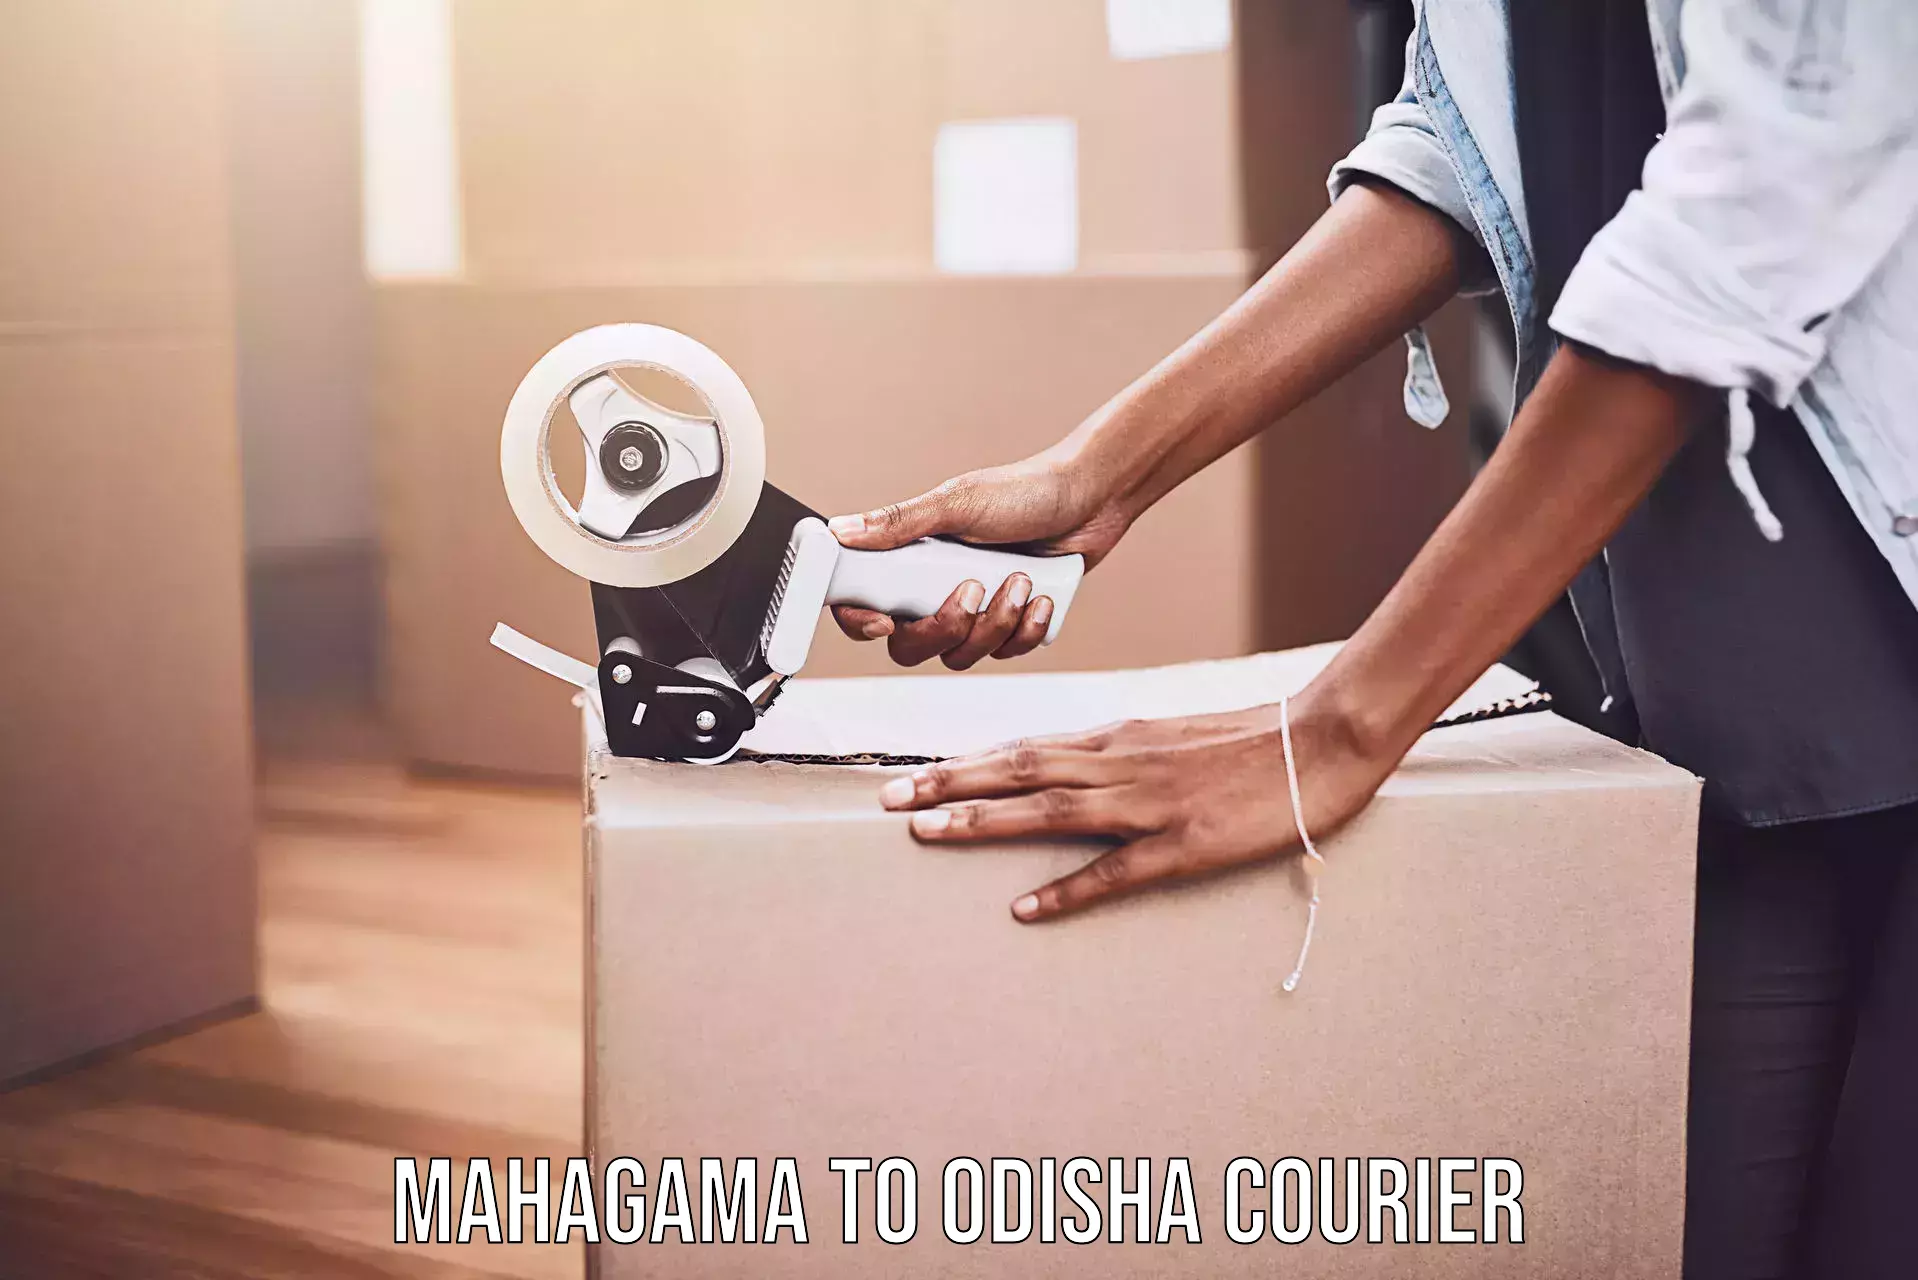 Door-to-door freight service Mahagama to Bonth